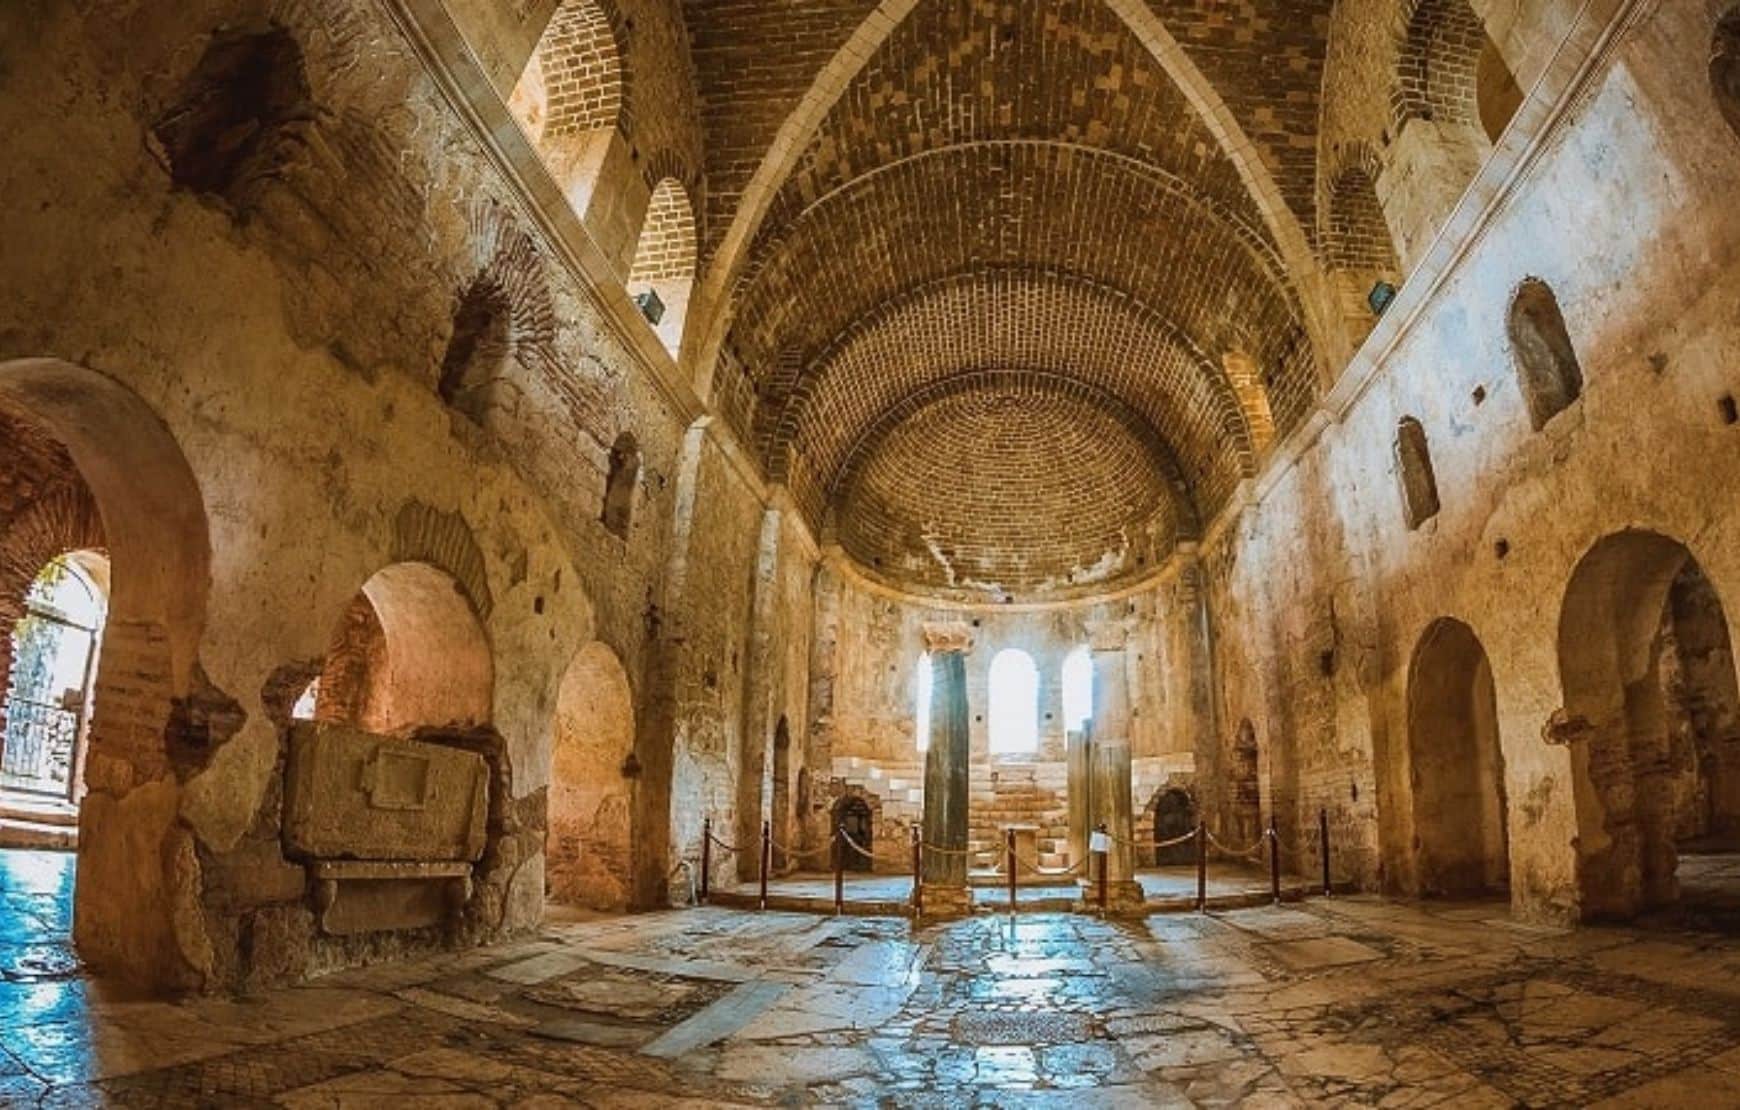 Visit St. Nicholas Church at our Kekova Tour Antalya